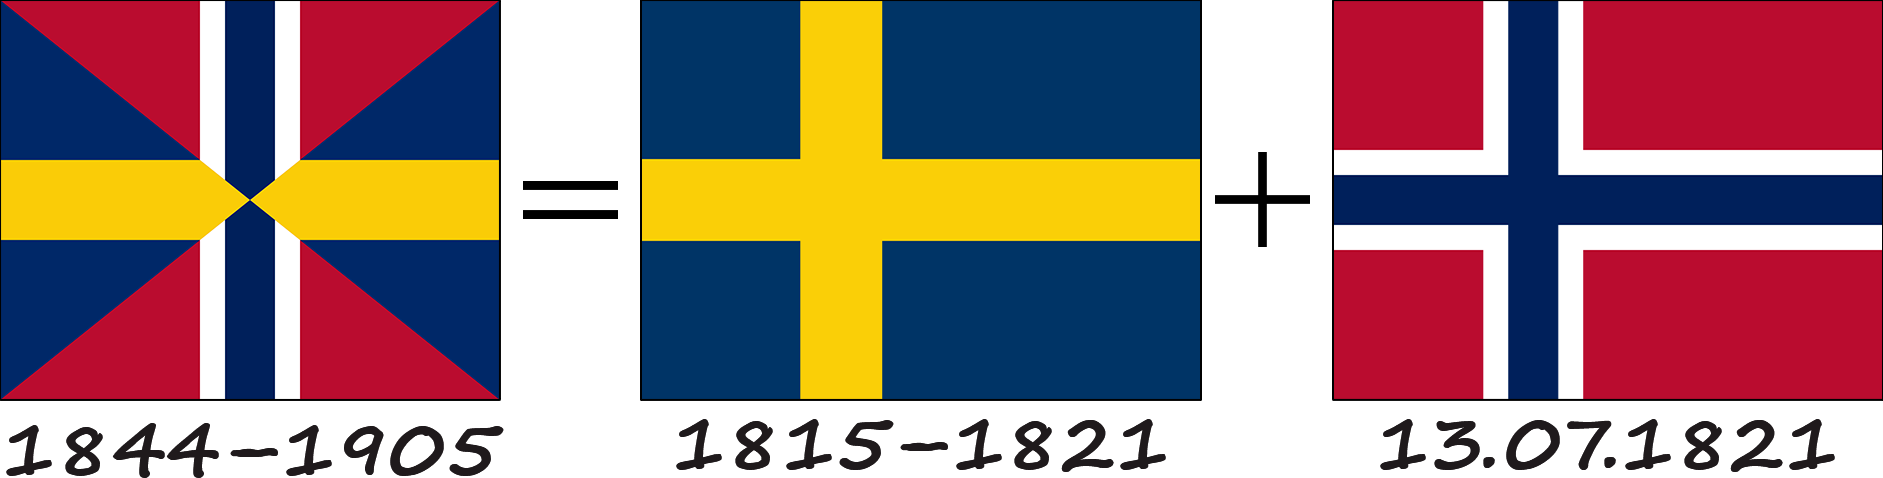 La légende du drapeau norvégien